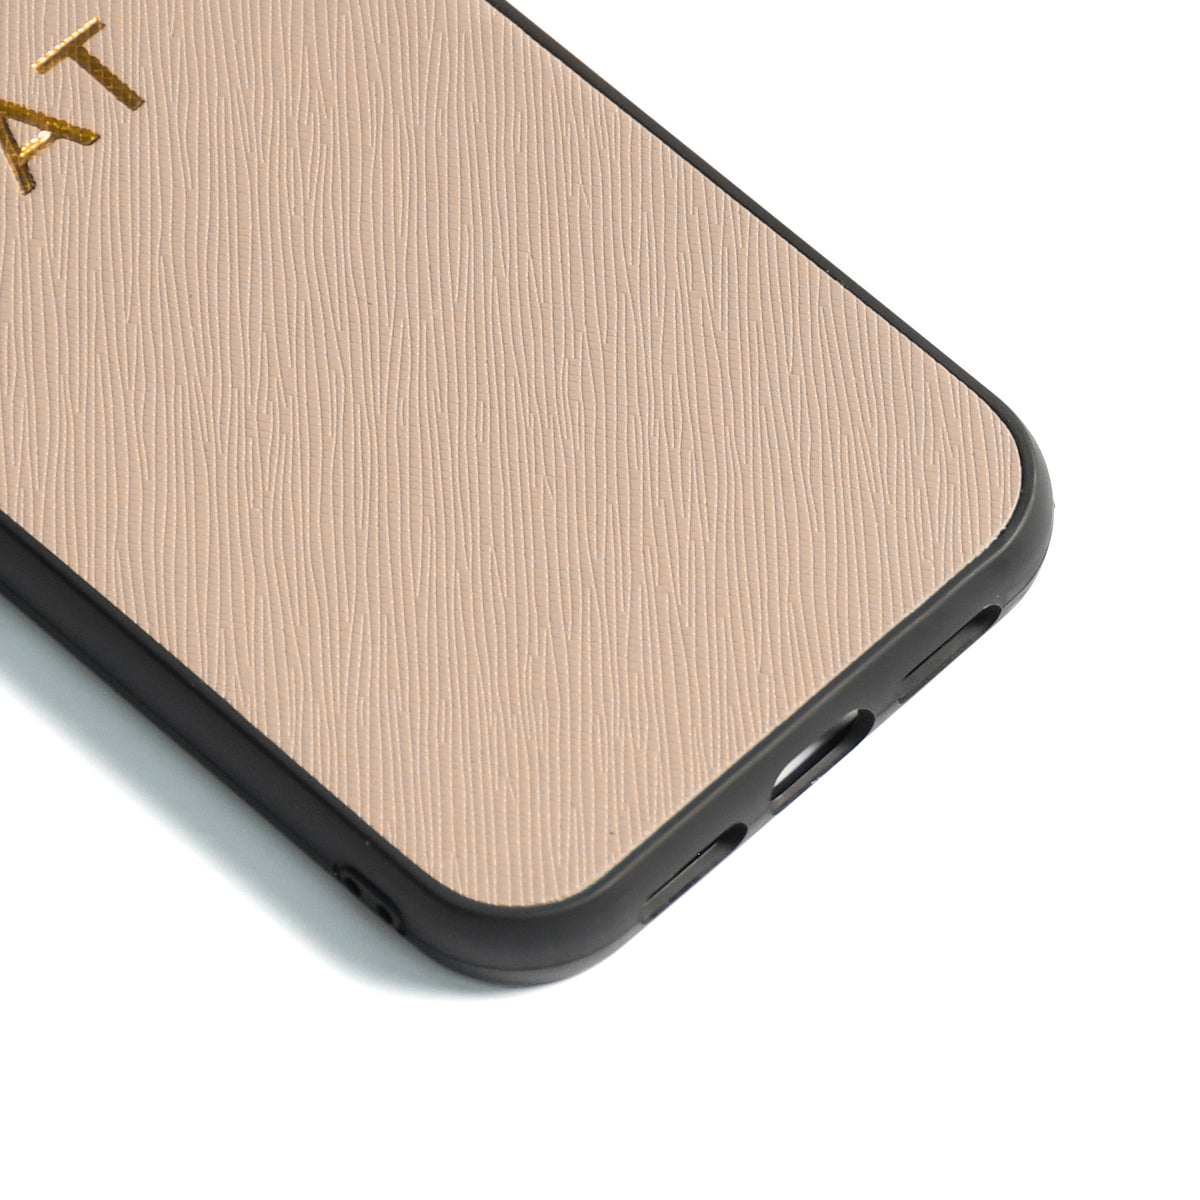 Samsung S9 Plus - Nude Coco - Personalizable